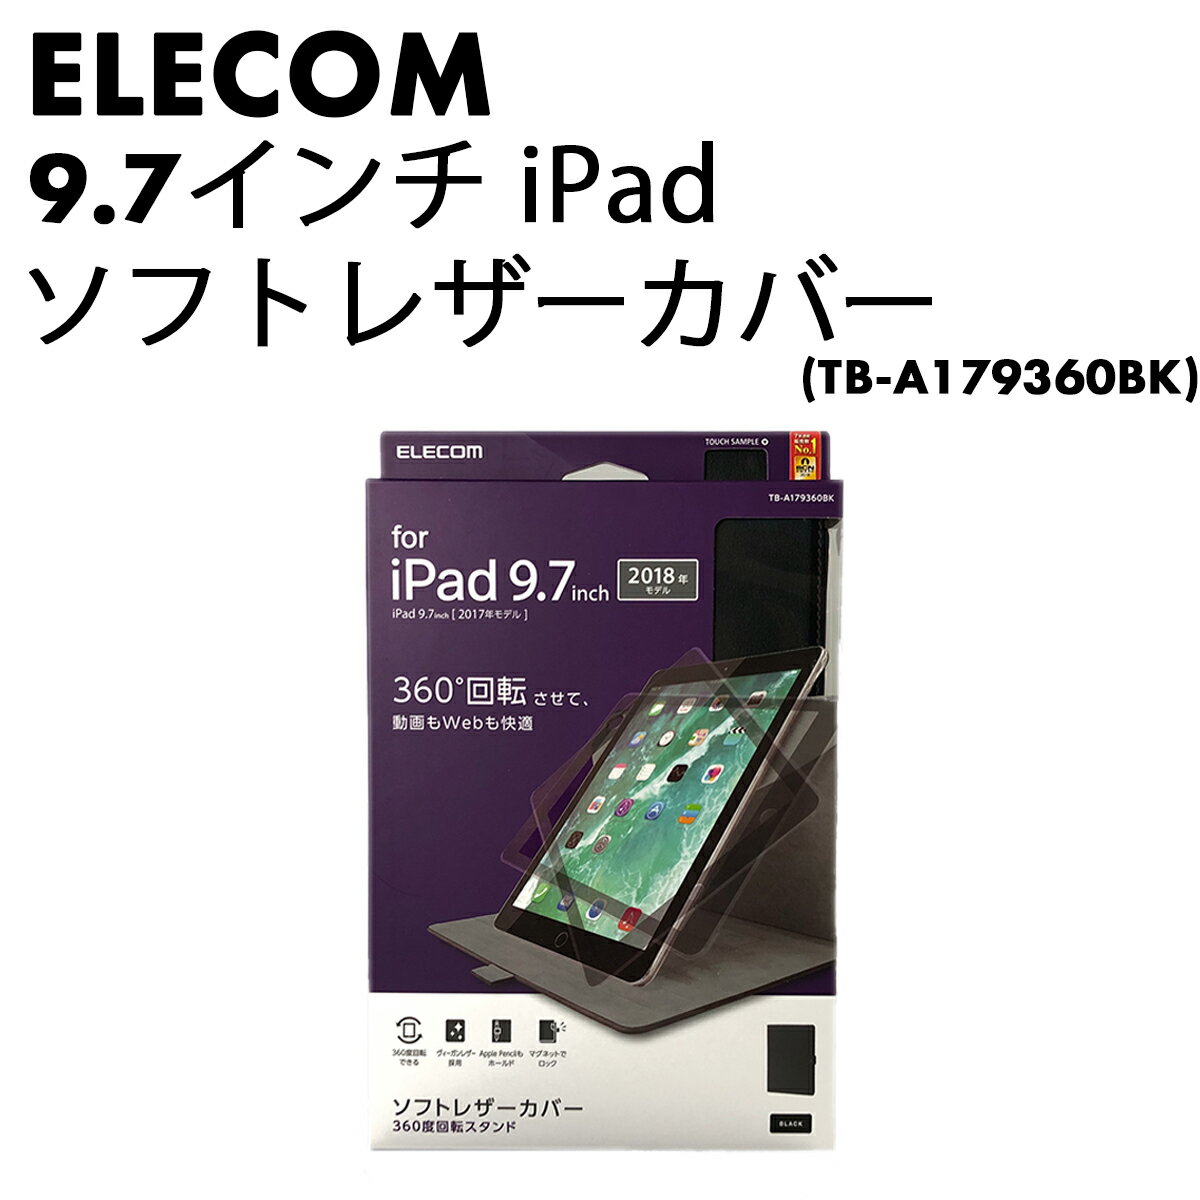 【送料無料】ELECOM 9.7インチiPad ソフトレザーカバー(TB-A179360BK) iPad 2018 2017モデル 【中古・Sランク】| ケース アイパッドケース アイパットケース iPadケース ペン収納 マグネット レザー 角度自由 360度回転 ブラック